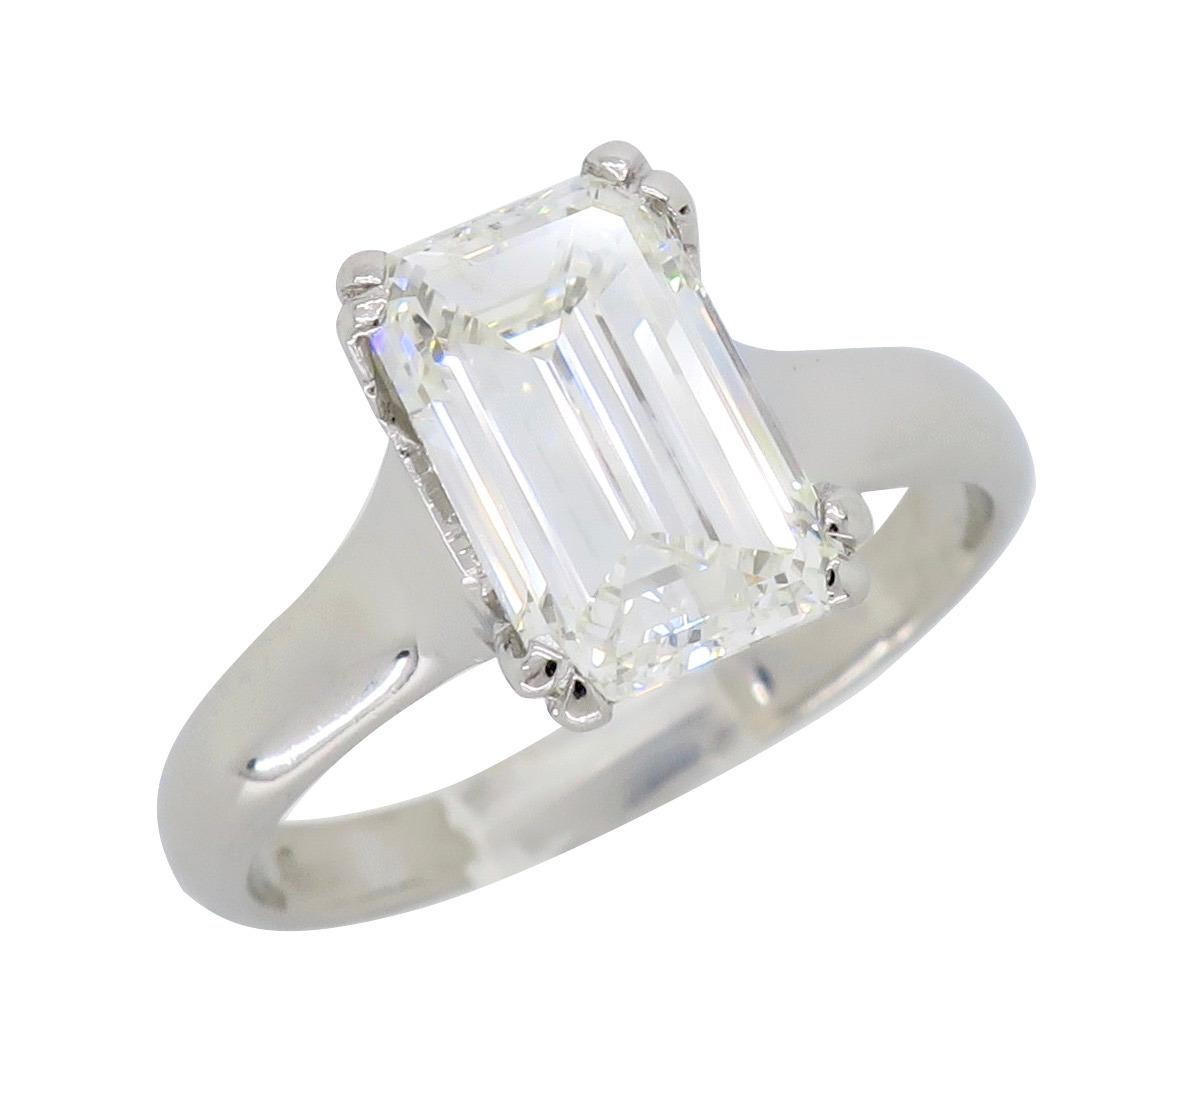 2.00 Carat Emerald Cut Diamond Solitaire Engagement Ring in Platinum 3